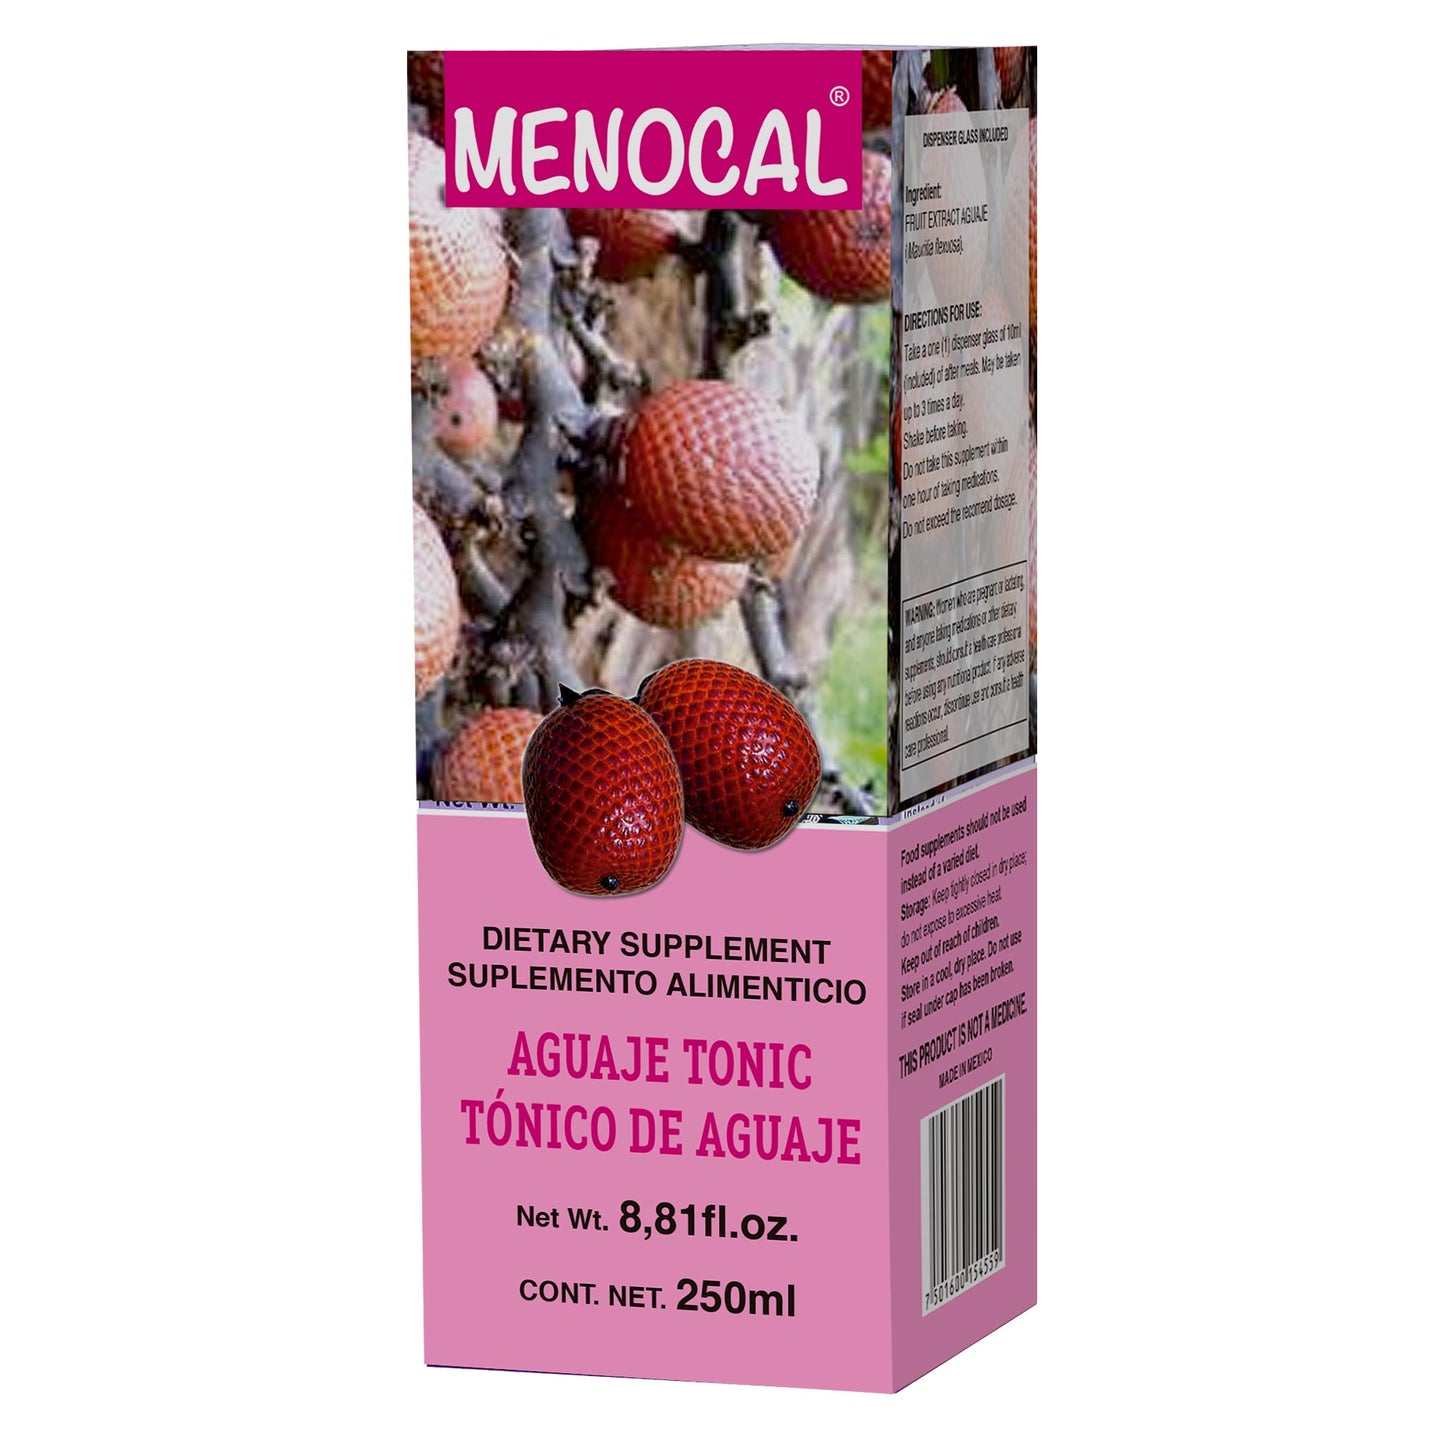 MENOCAL ® tónico de aguaje 250ml